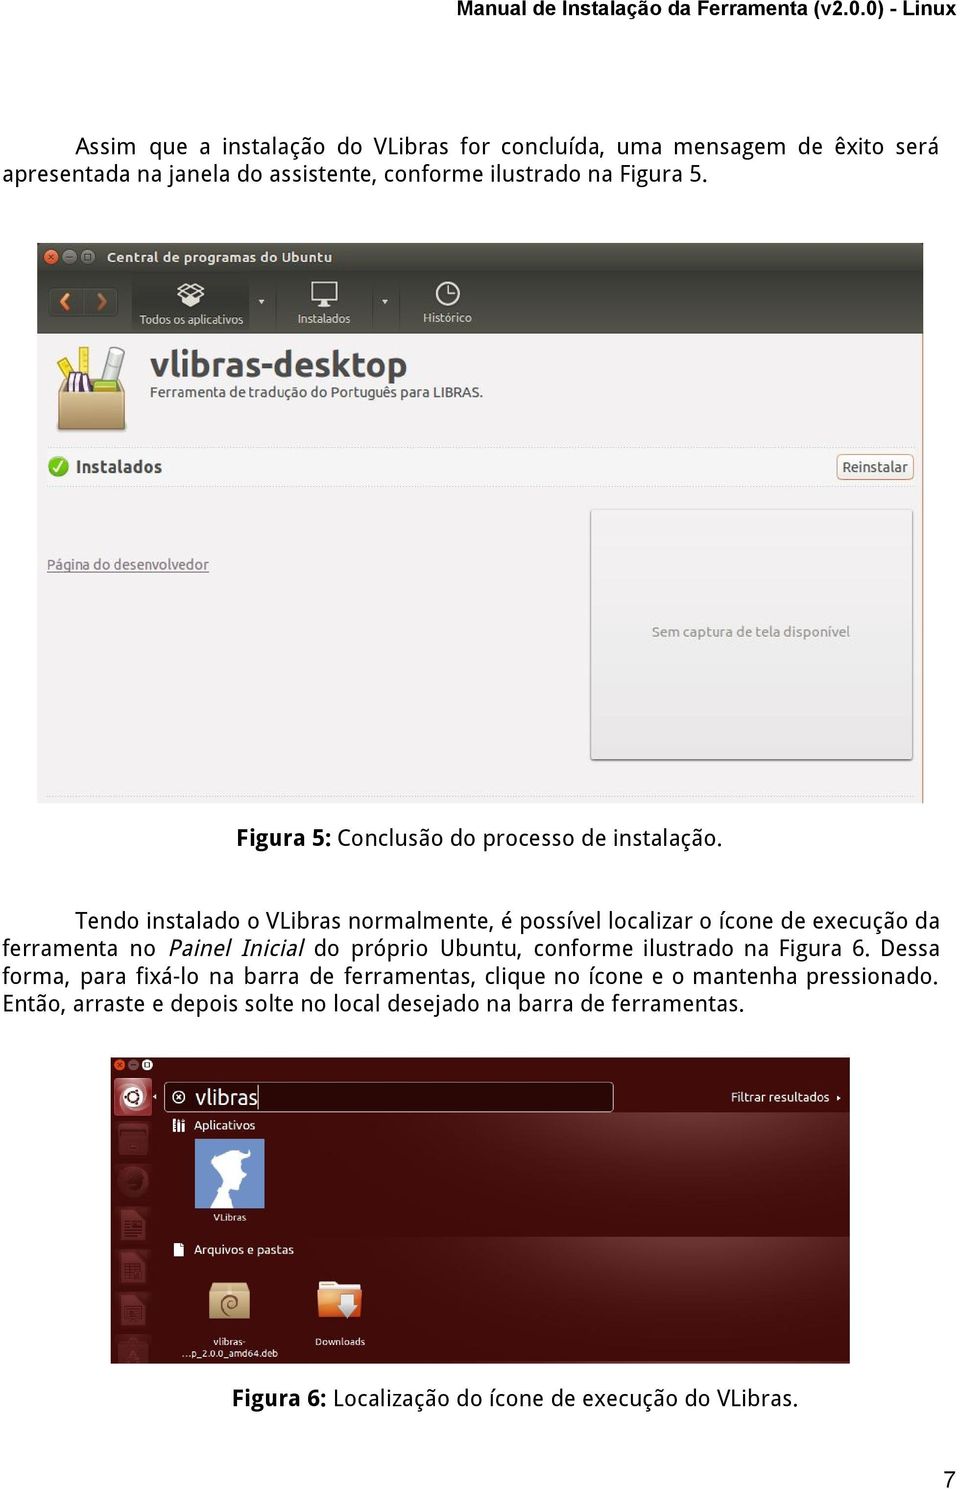 Tendo instalado o VLibras normalmente, é possível localizar o ícone de execução da ferramenta no Painel Inicial do próprio Ubuntu, conforme